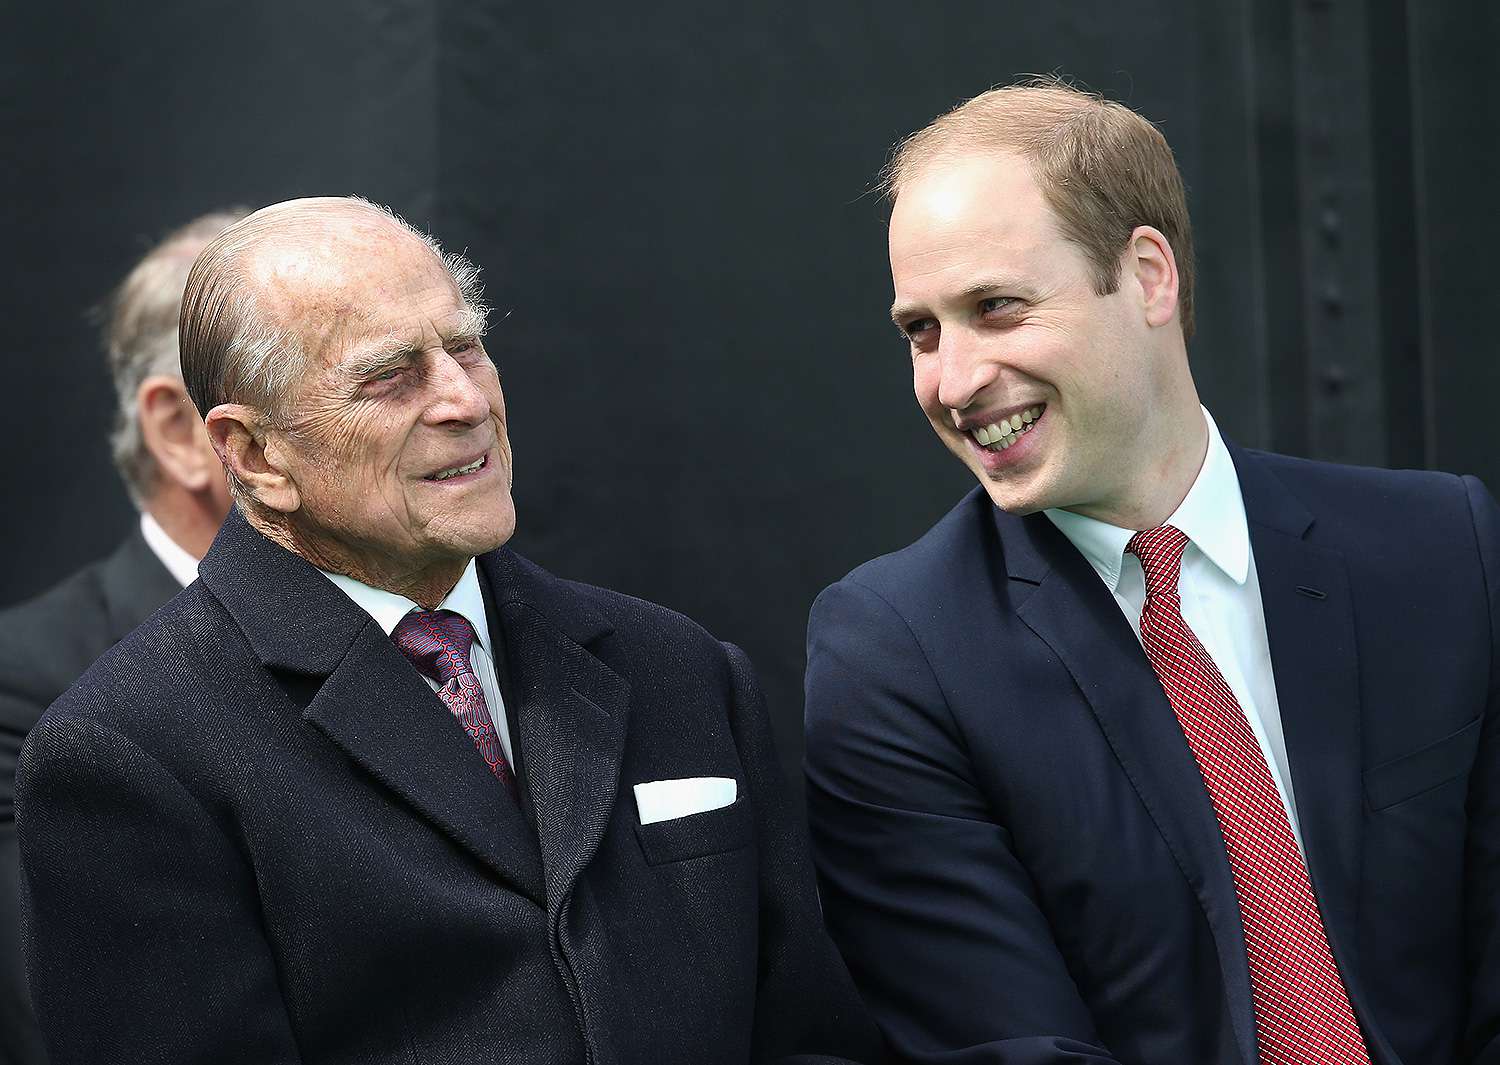 Prinz Philip war "entscheidend, um Trainer William als zukünftigen König zu helfen", sagt der königliche Historiker